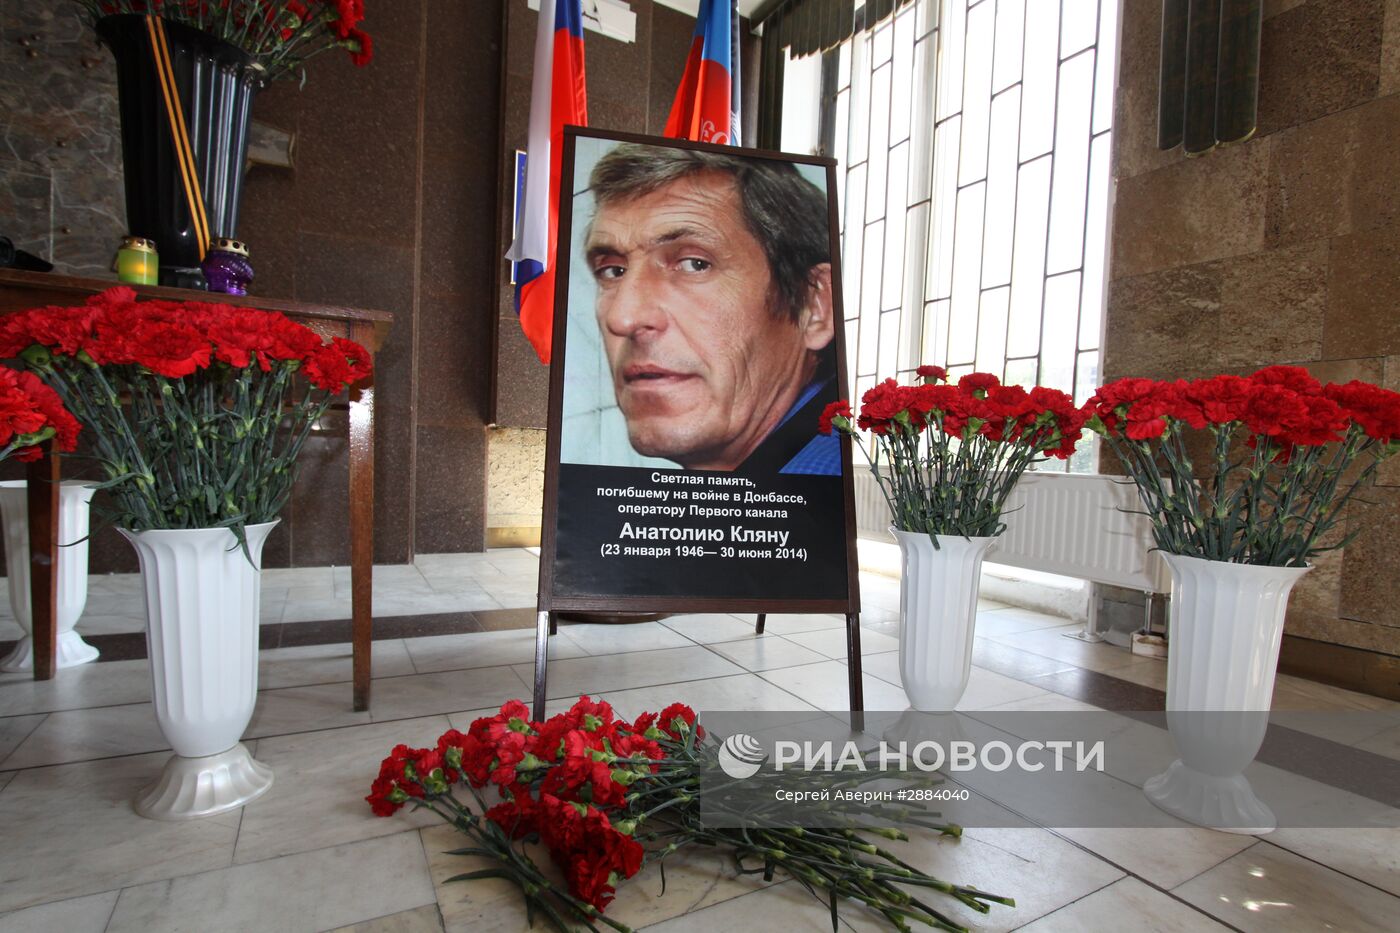 Памятные мероприятия в честь оператора "Первого канала" Анатолия Кляна, погибшего в Донецке